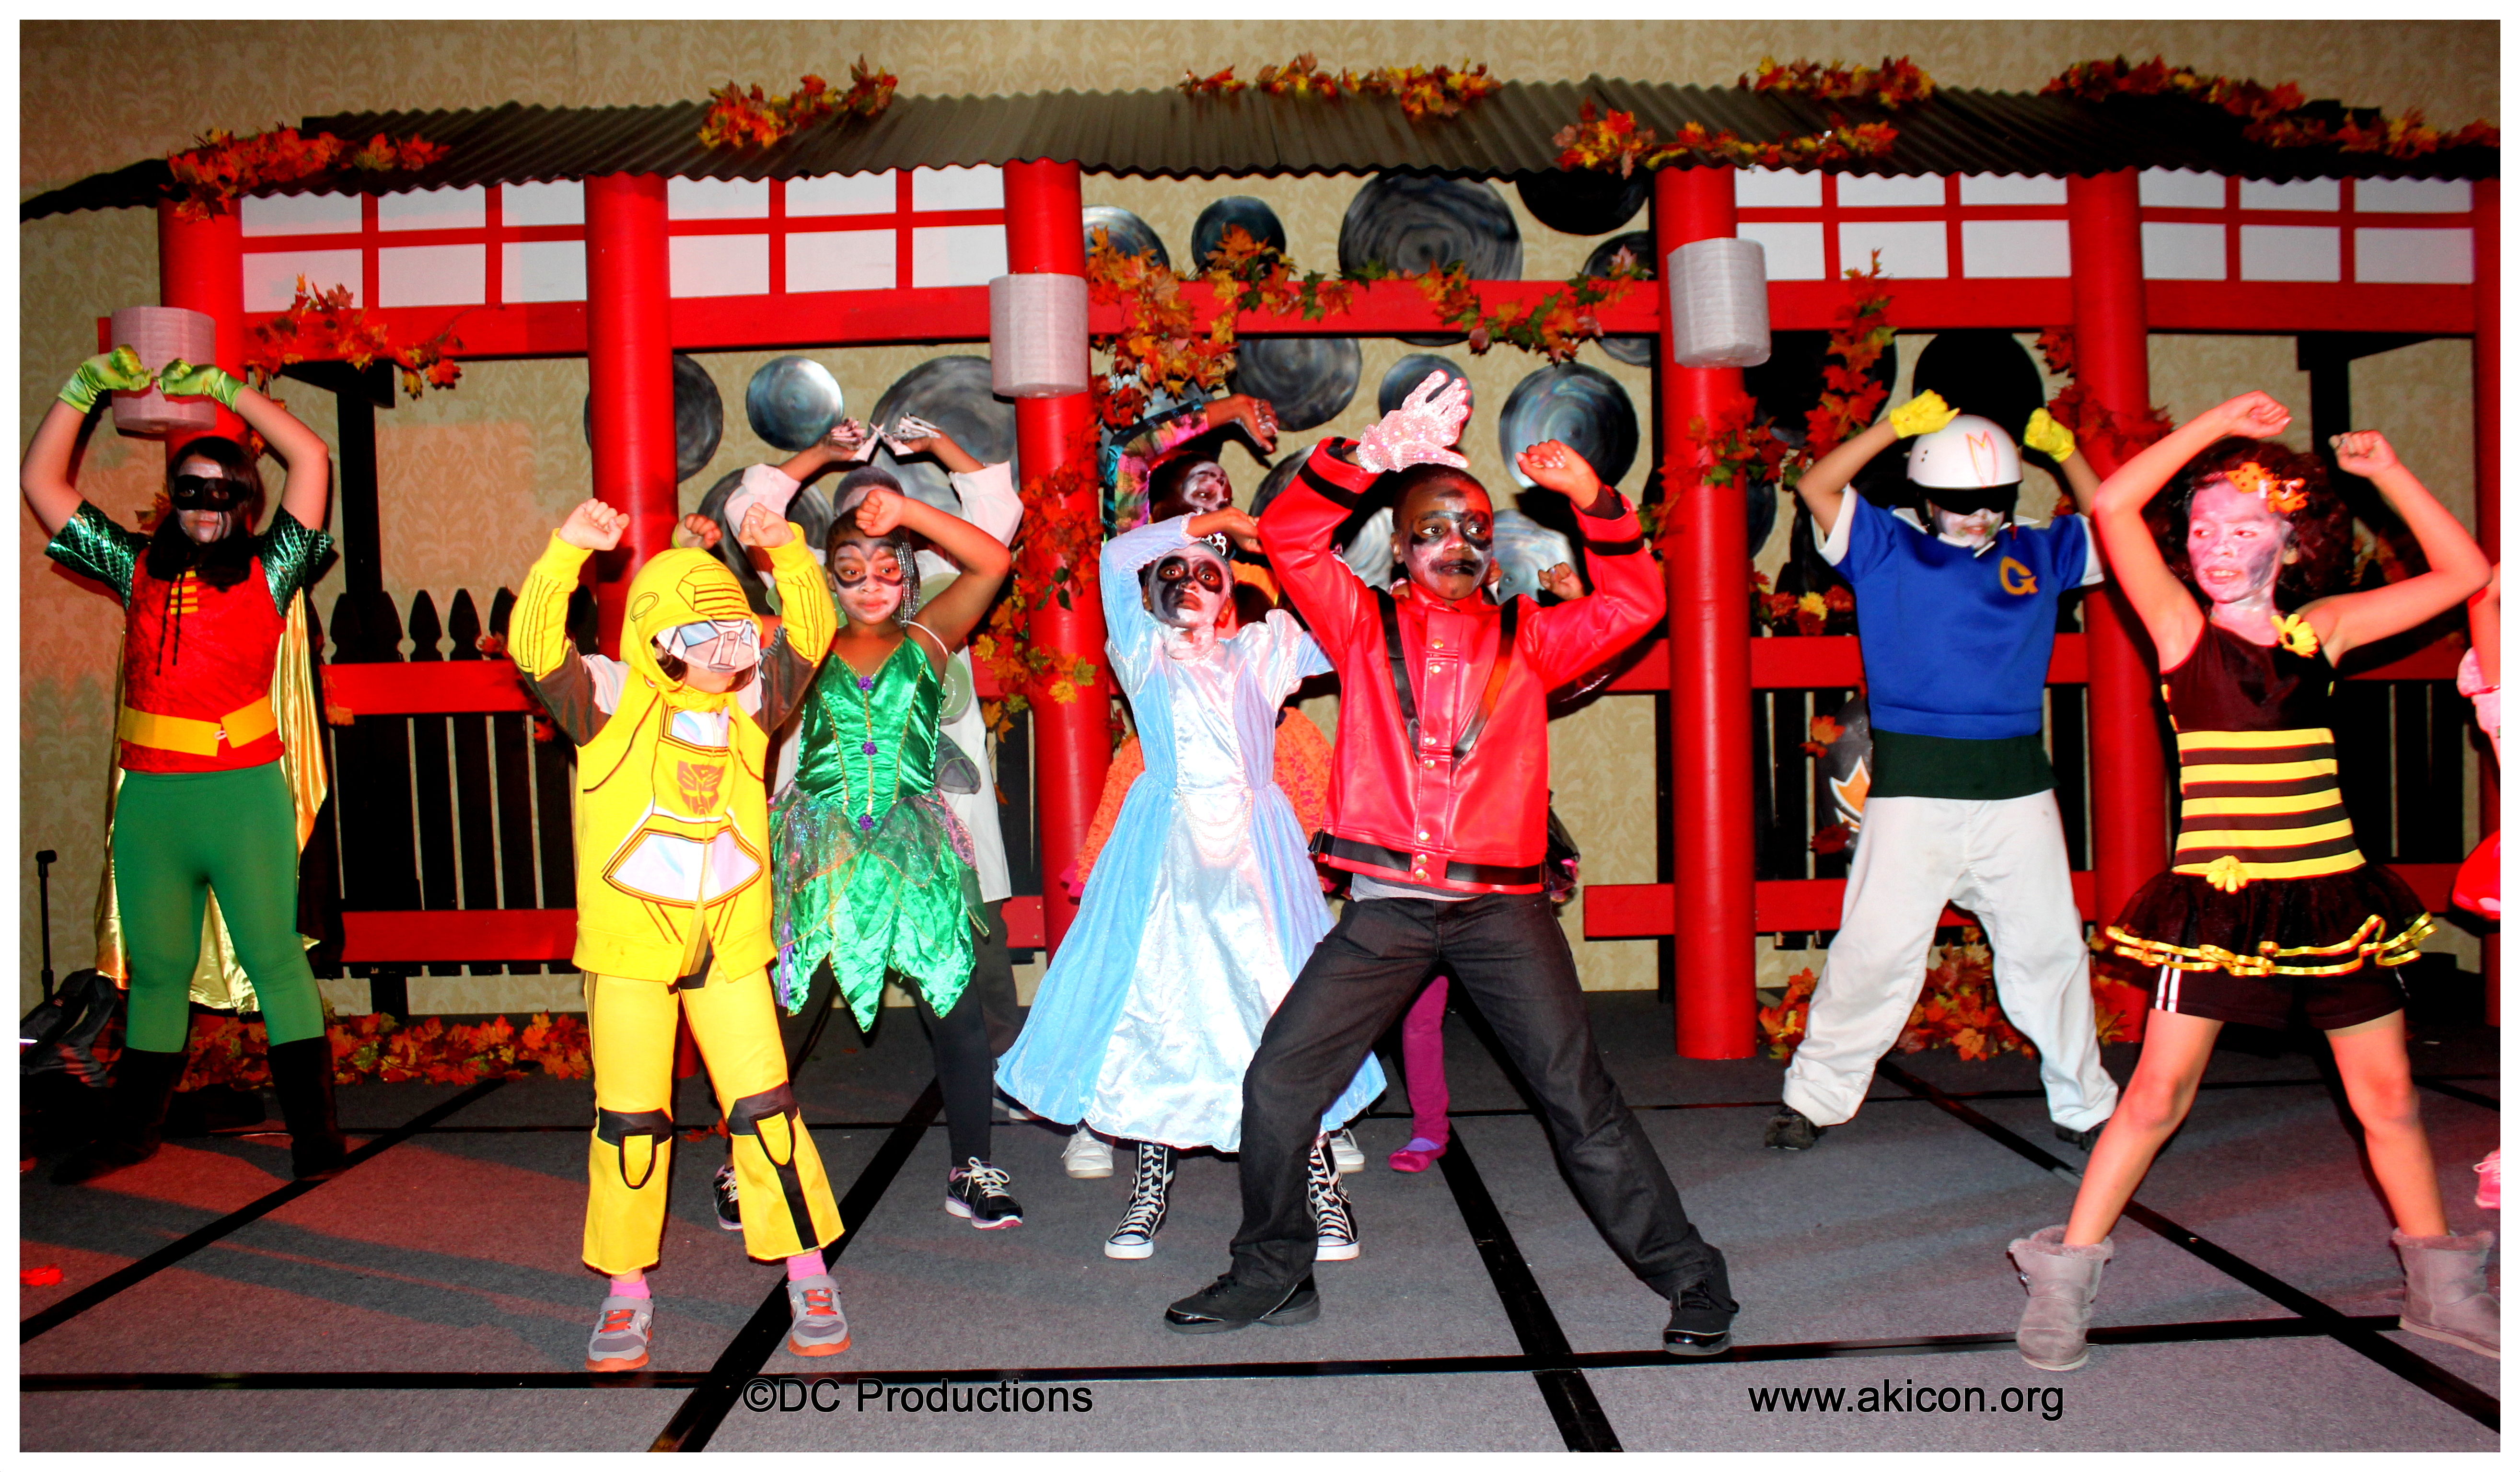 Michael Jackson Thriller Kids Dance Routine at Akicon Convention